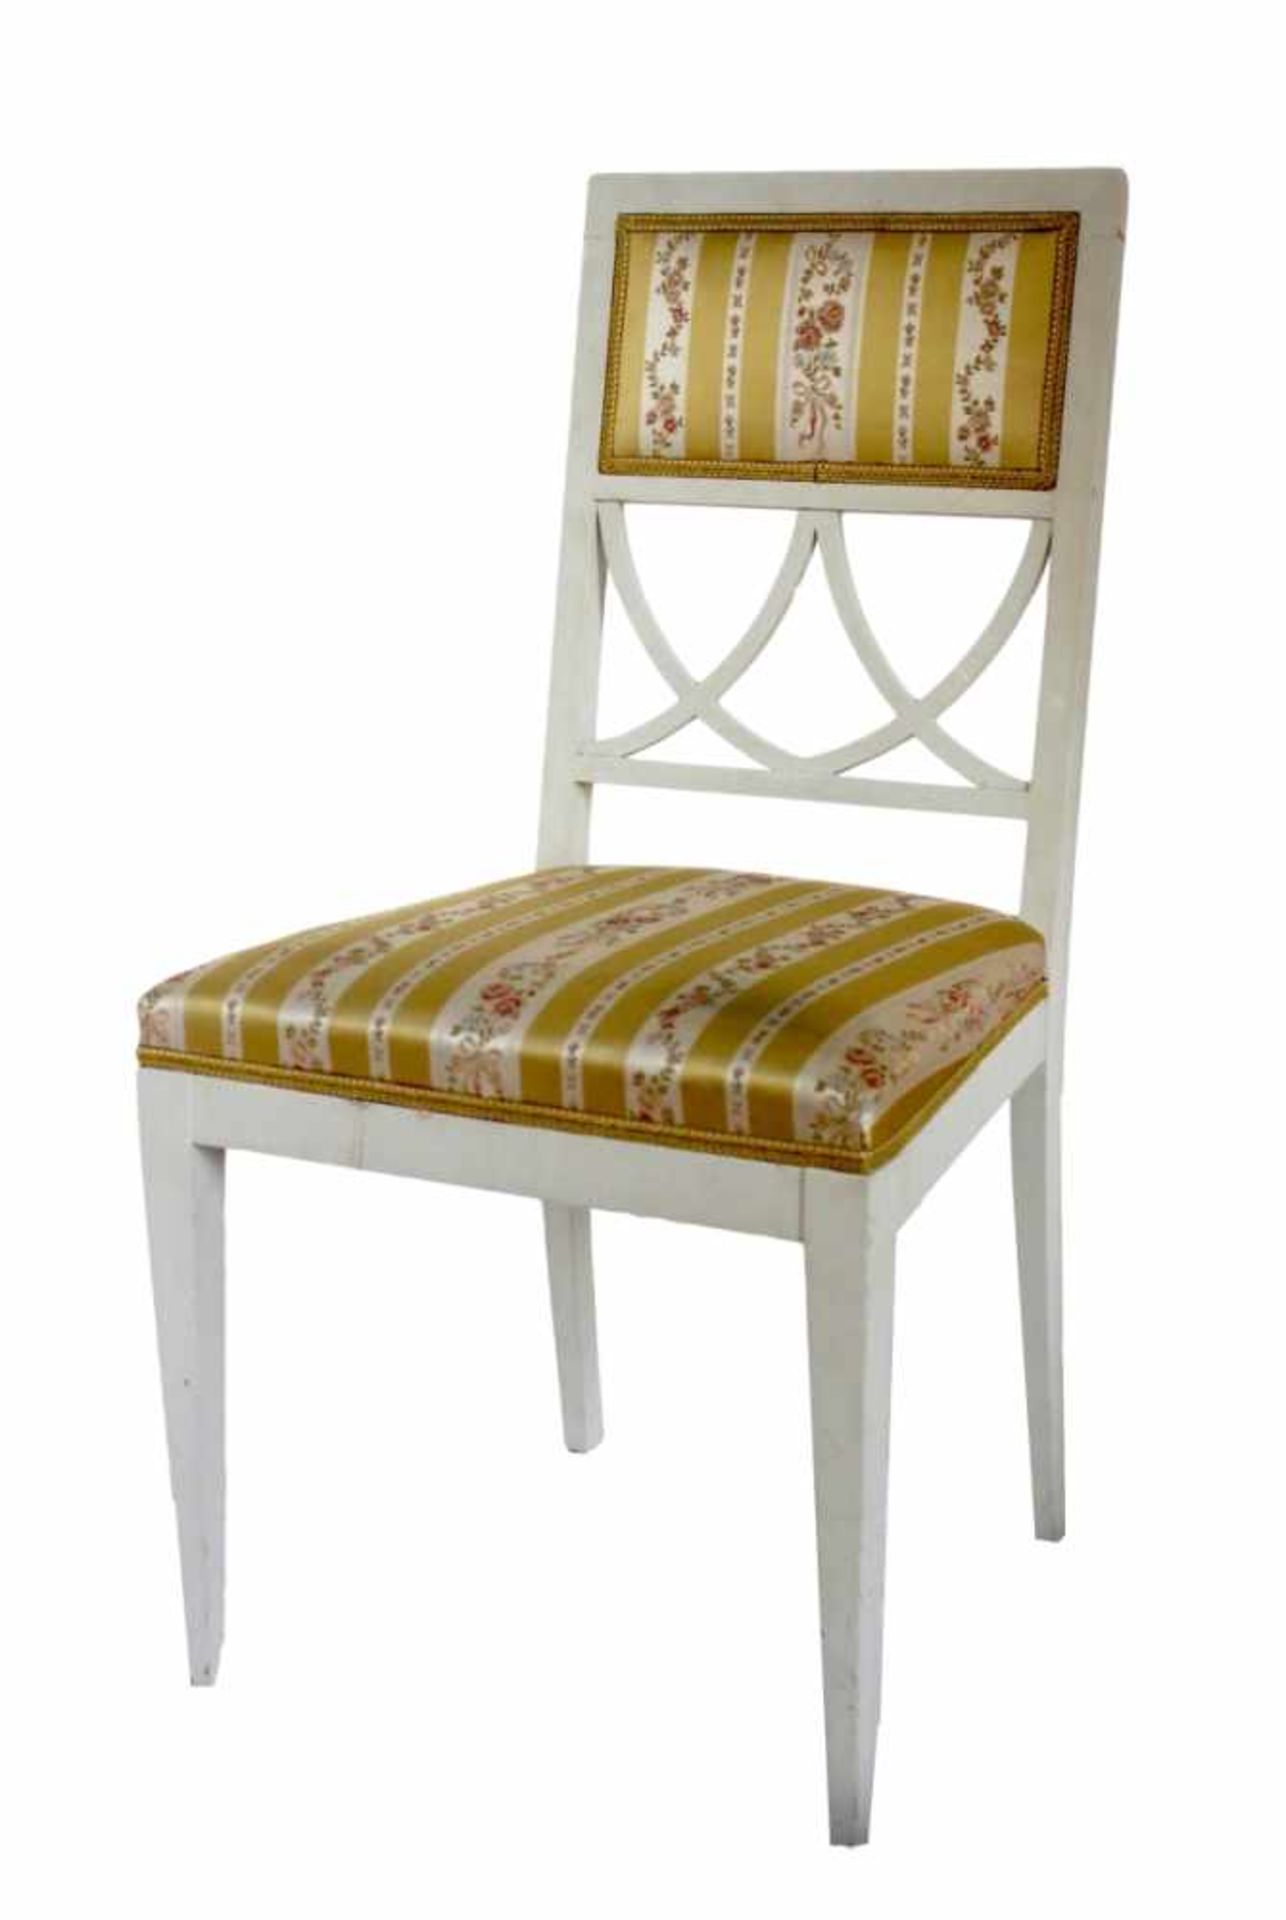 Satz Stühle - wohl deutsch um 1900 Holz, weiß gefaßt, konische Beine, gerade Rückenlehne mit